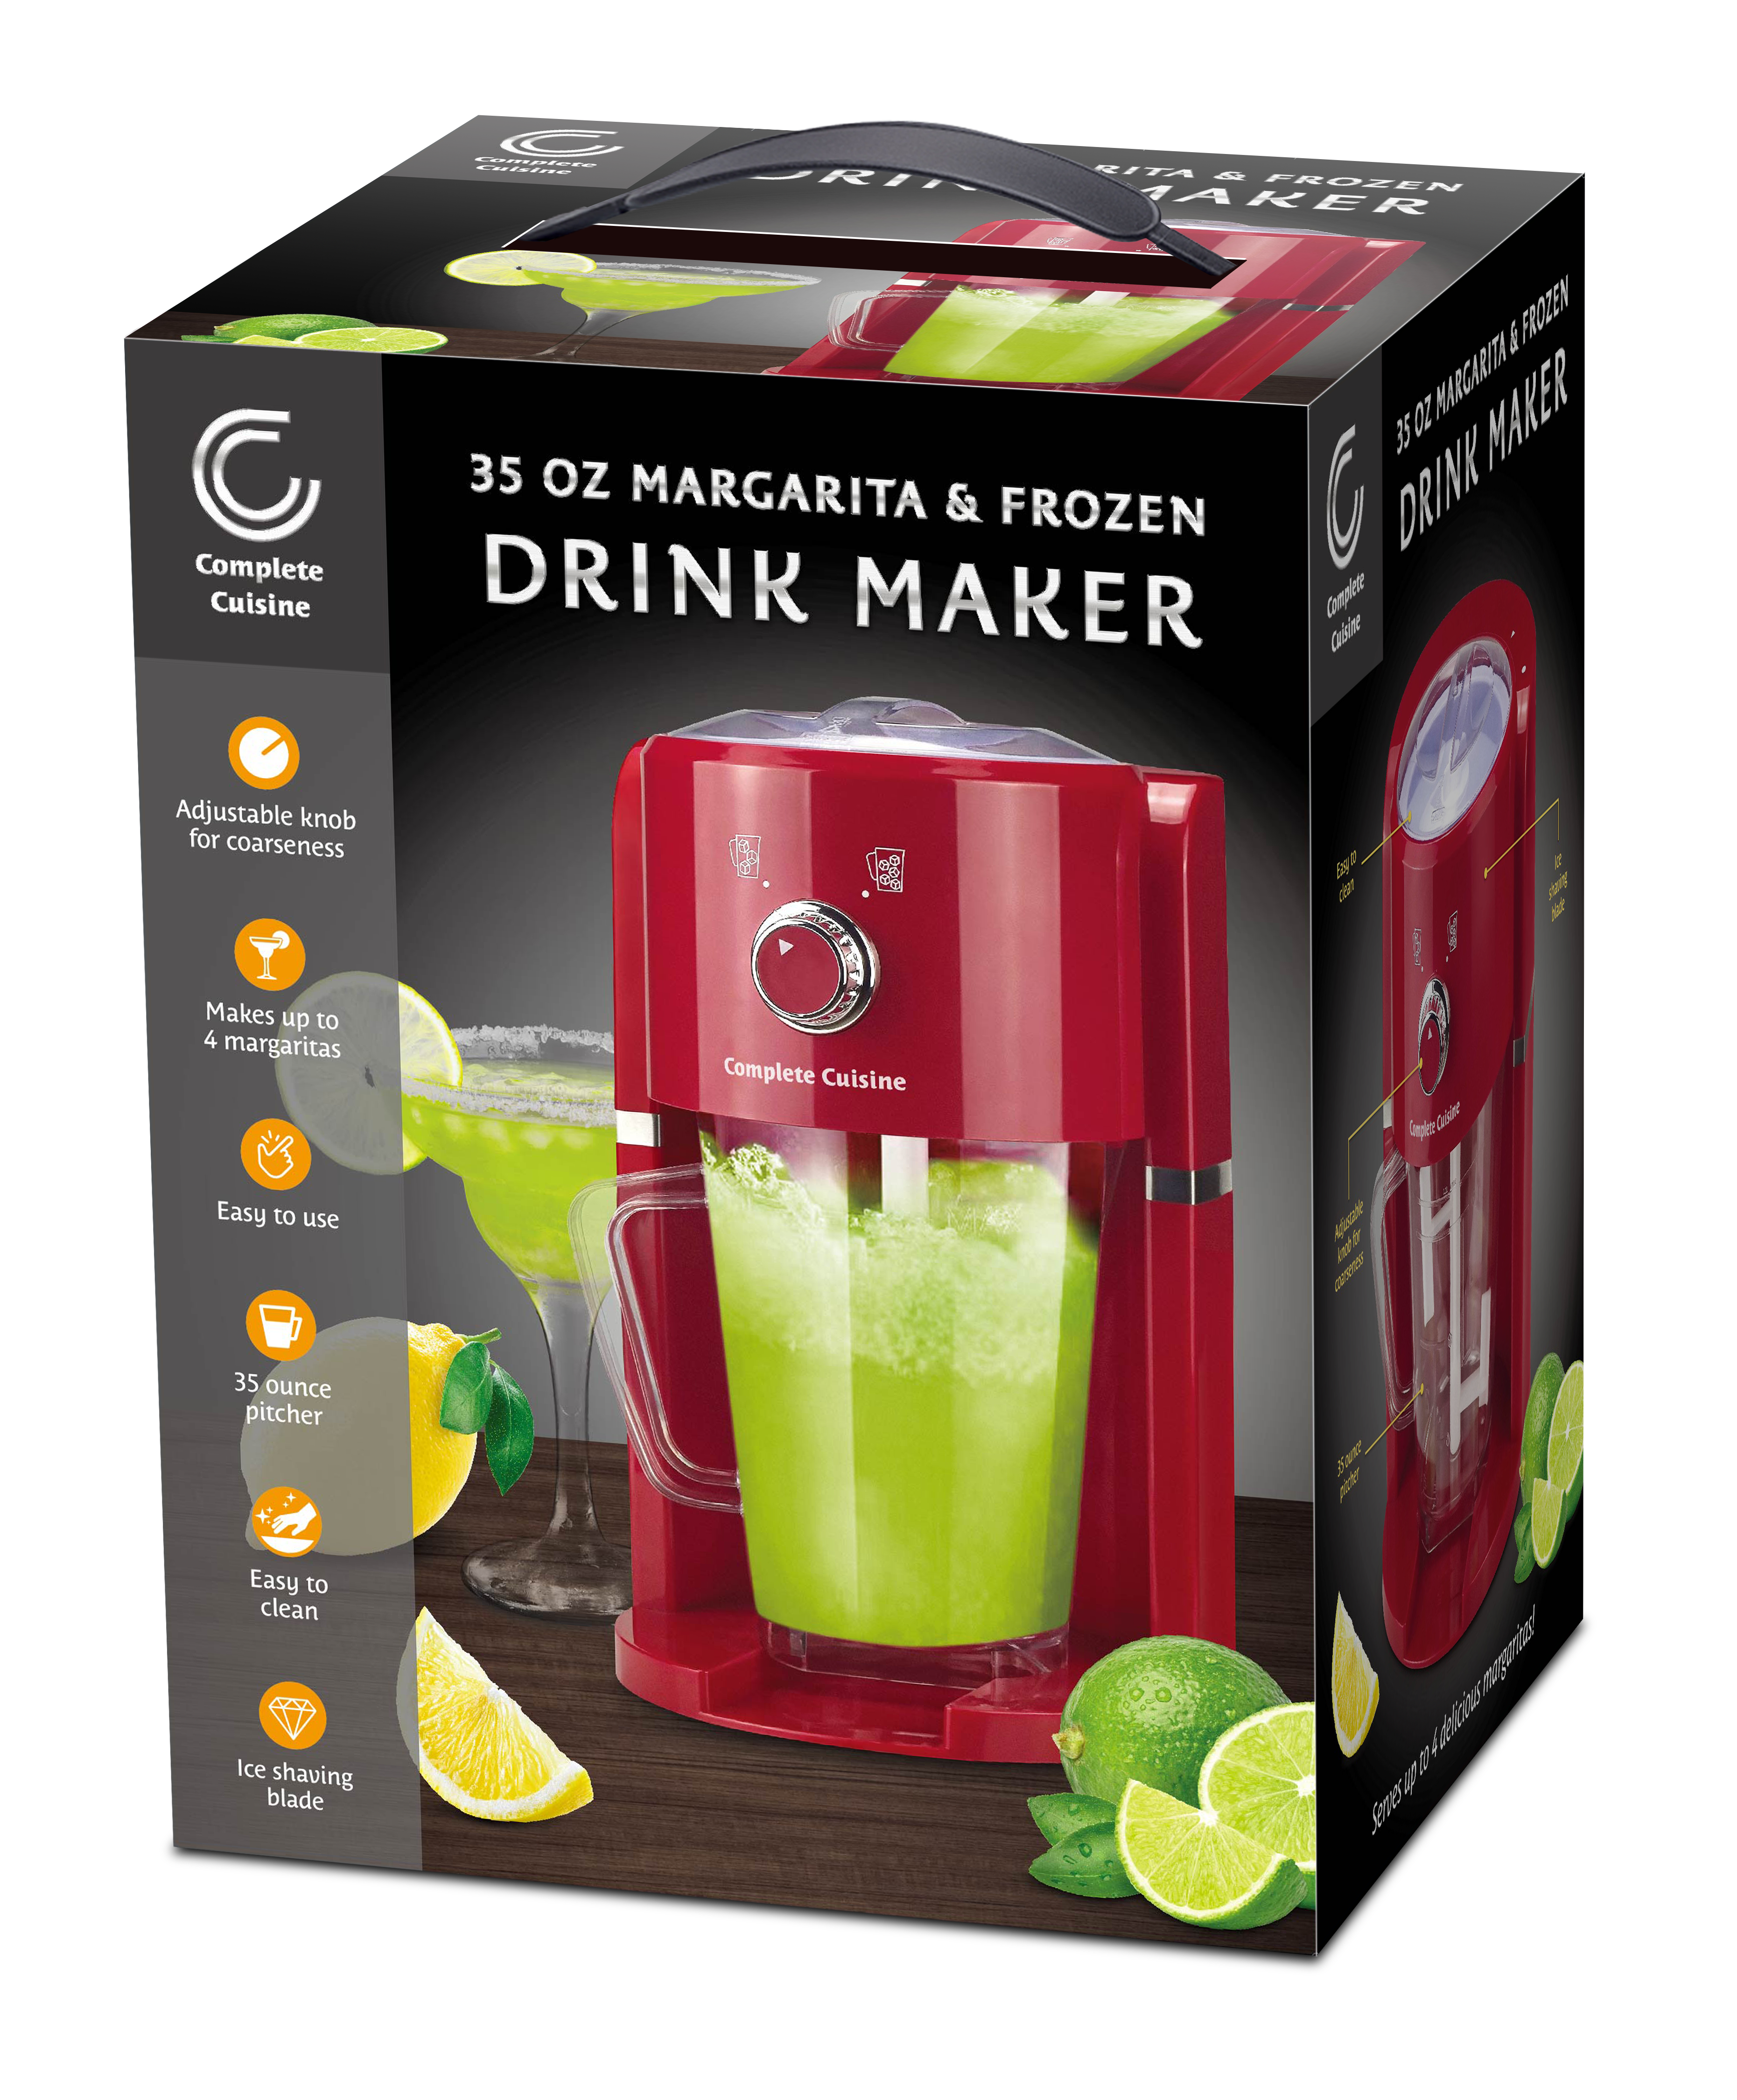 Frozen Drink Maker & Margarita Machine